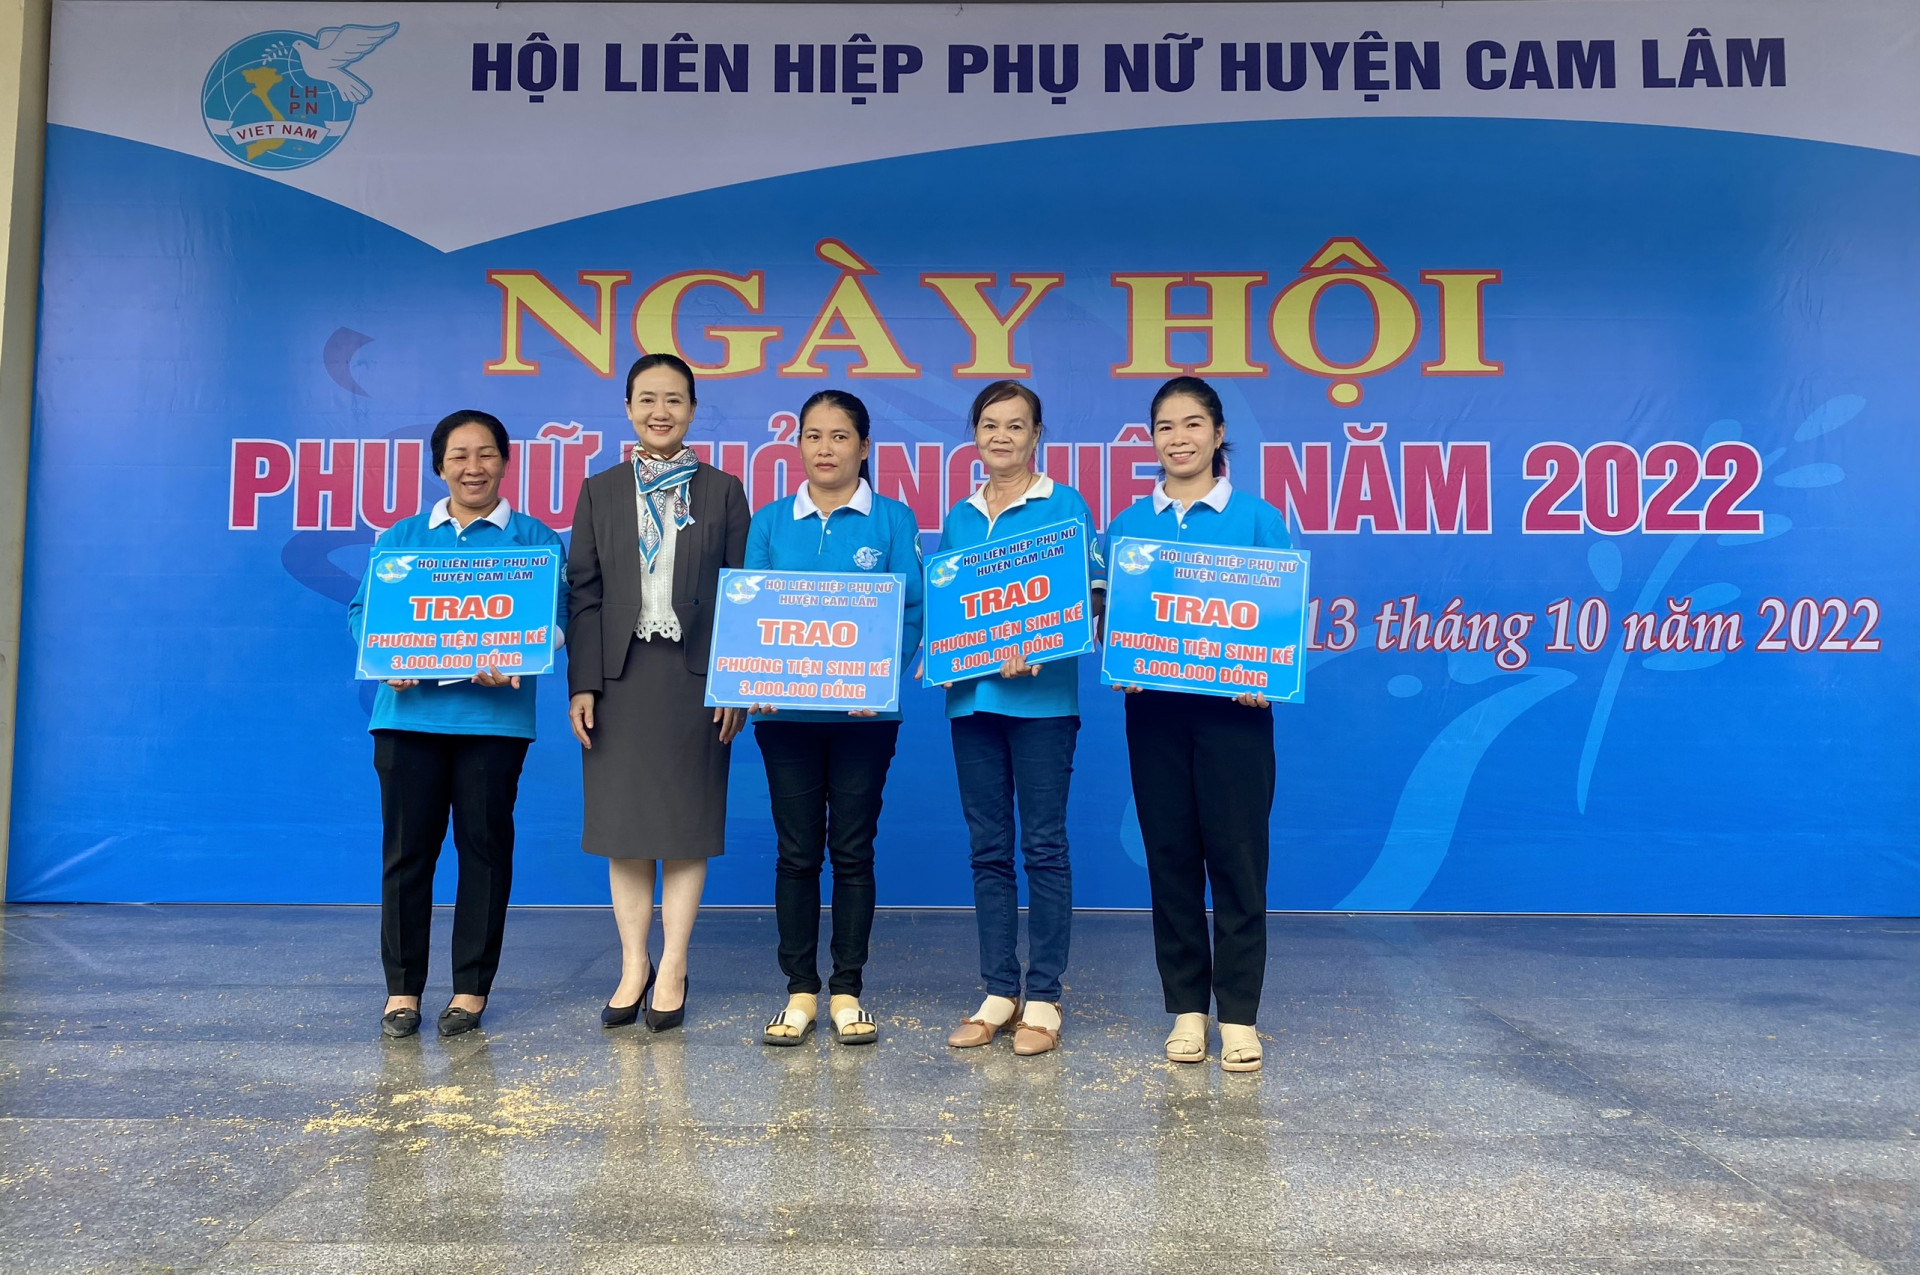 Bà Nguyễn Quỳnh Nga (thứ 2 từ trái sang) - Chủ tịch Hội LHPN tỉnh Khánh Hoà trao sinh kế cho các hội viên, phụ nữ khó khăn.